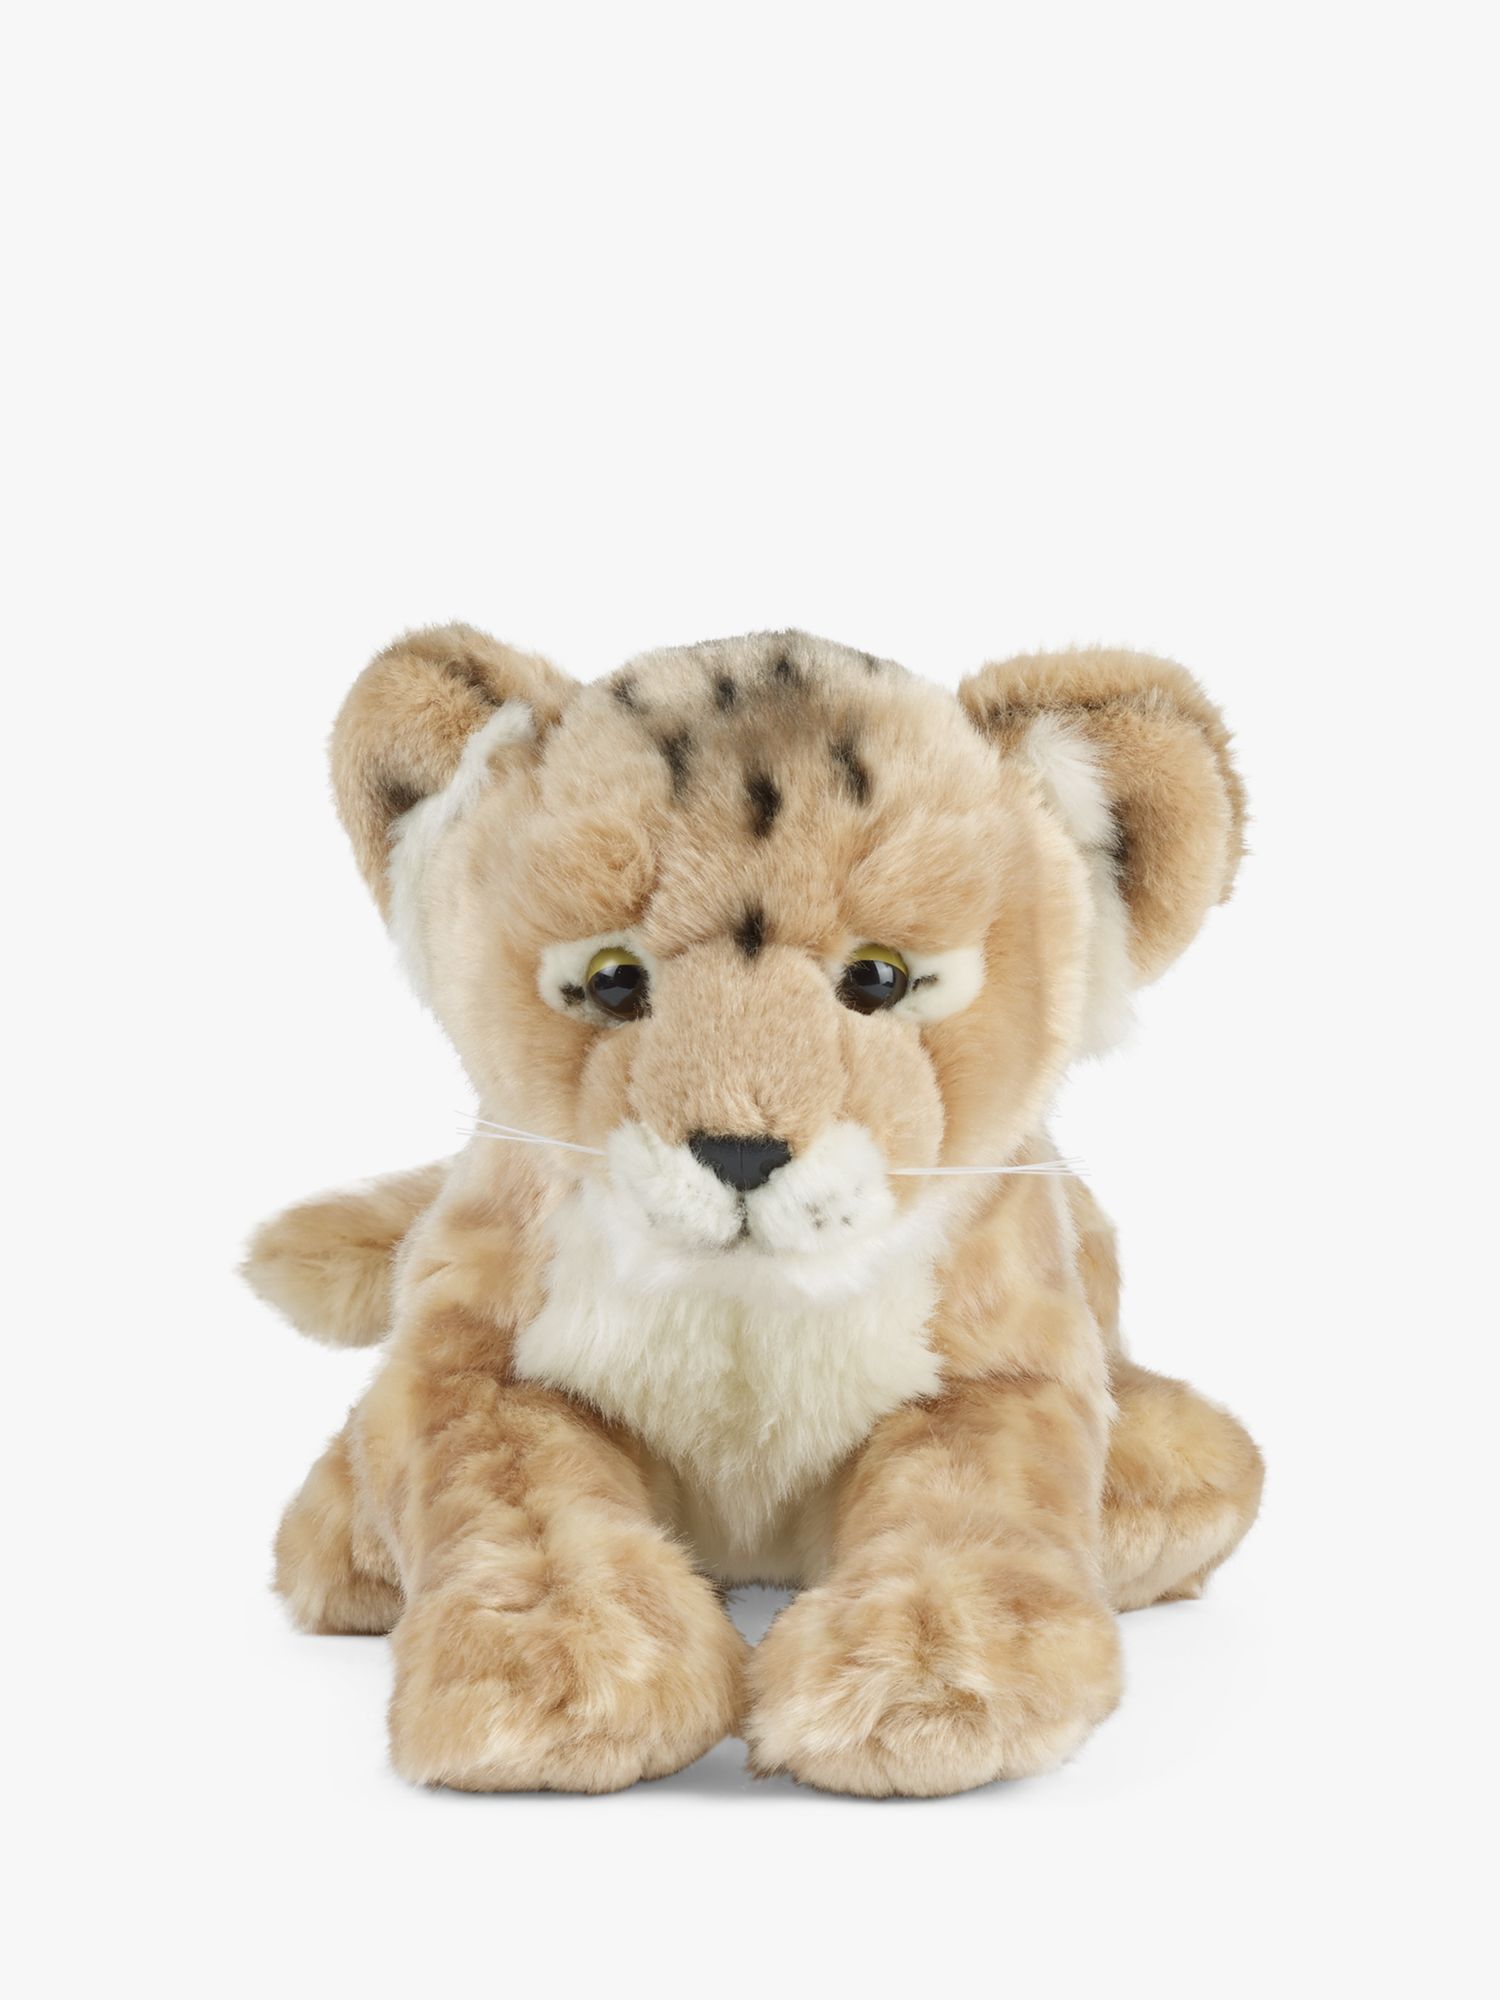 lion cuddly toy